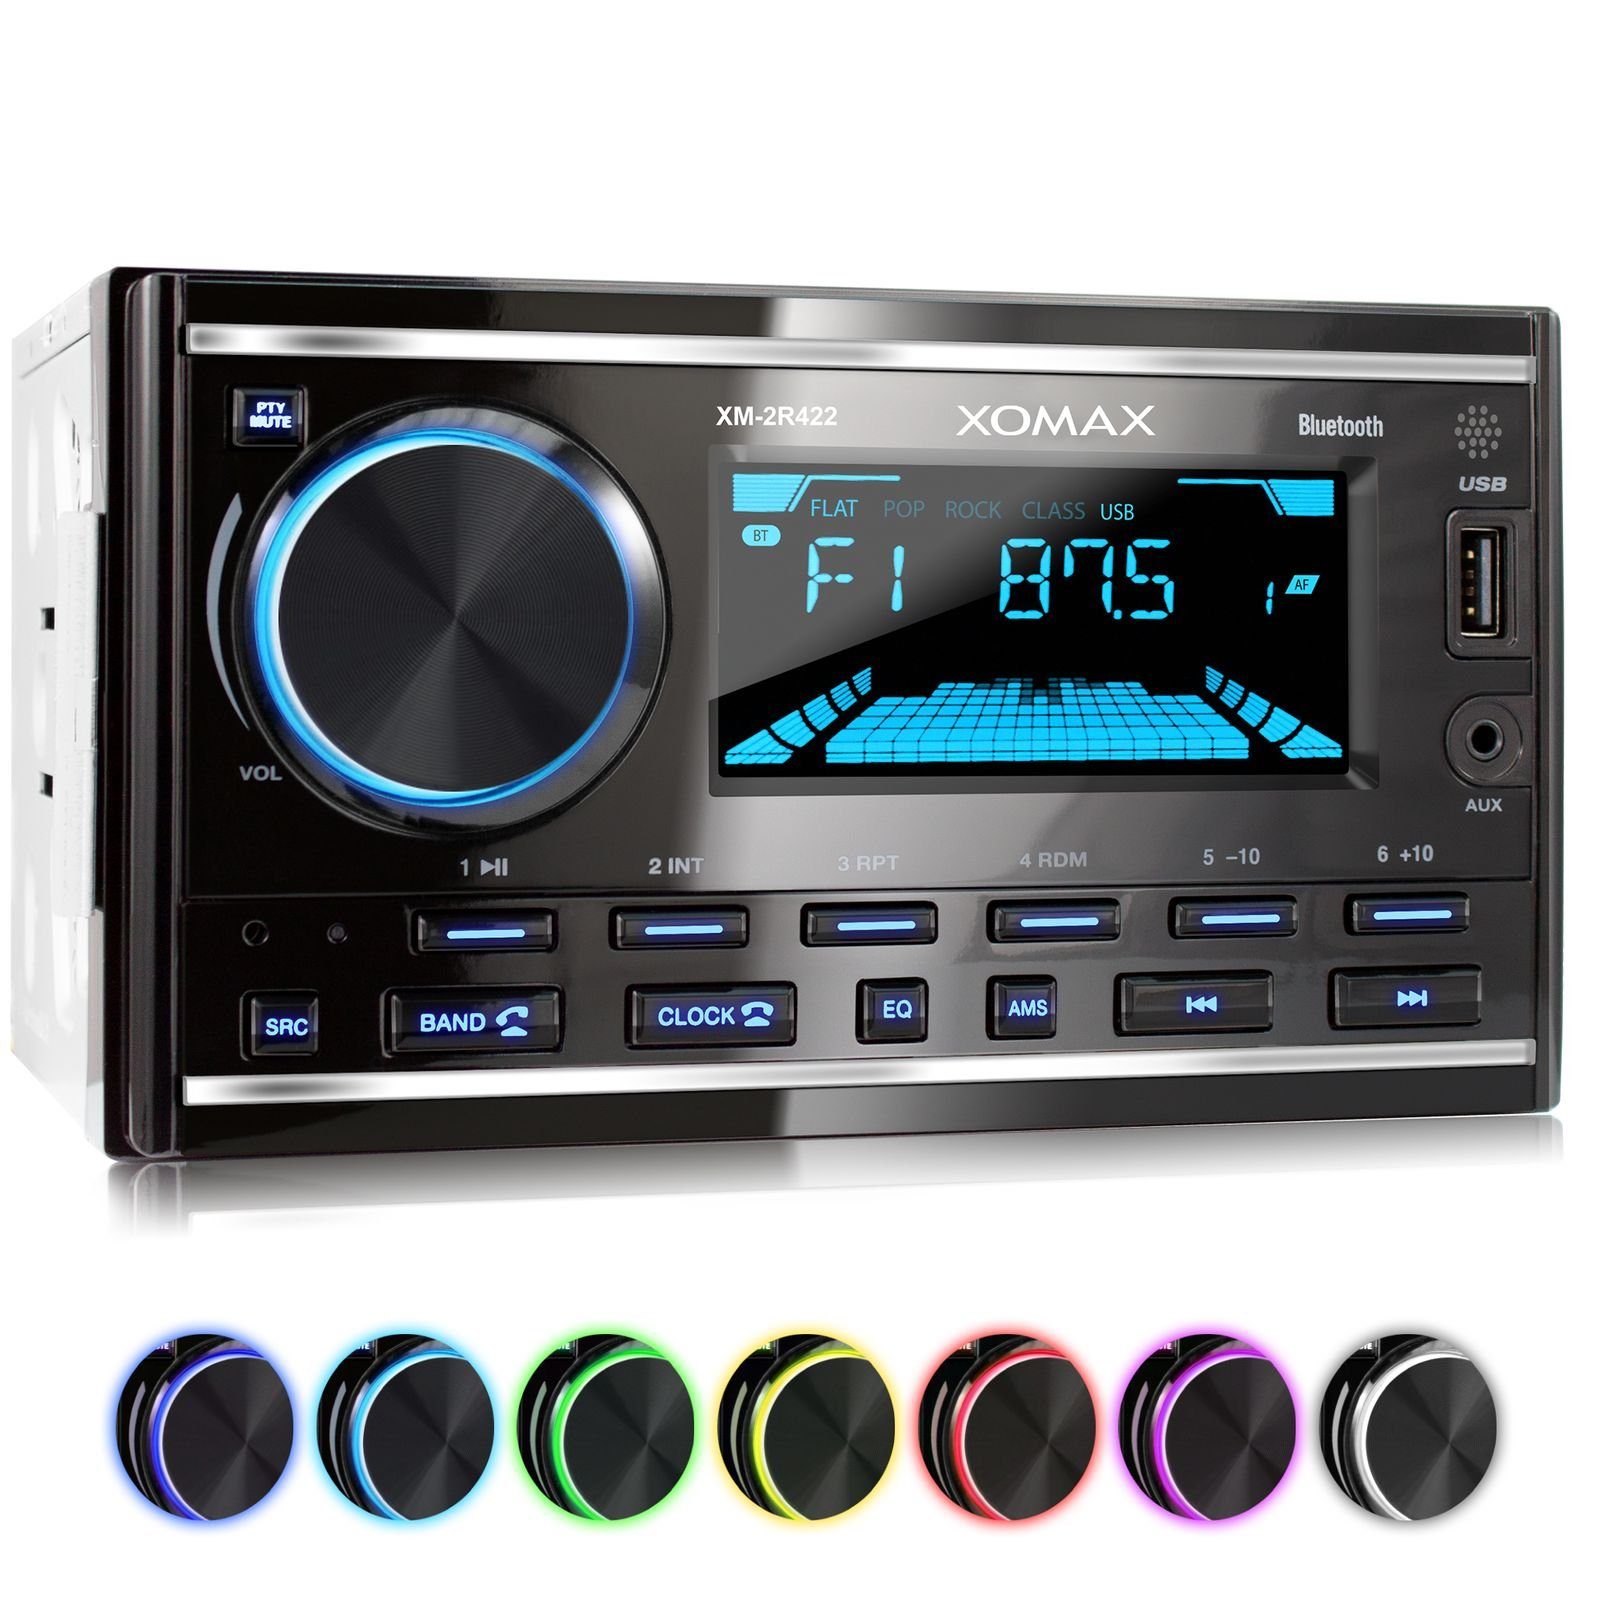 XOMAX Autoradio mit Bluetooth Freisprecheinrichtung, USB, AUX-IN, 2 DIN Autoradio